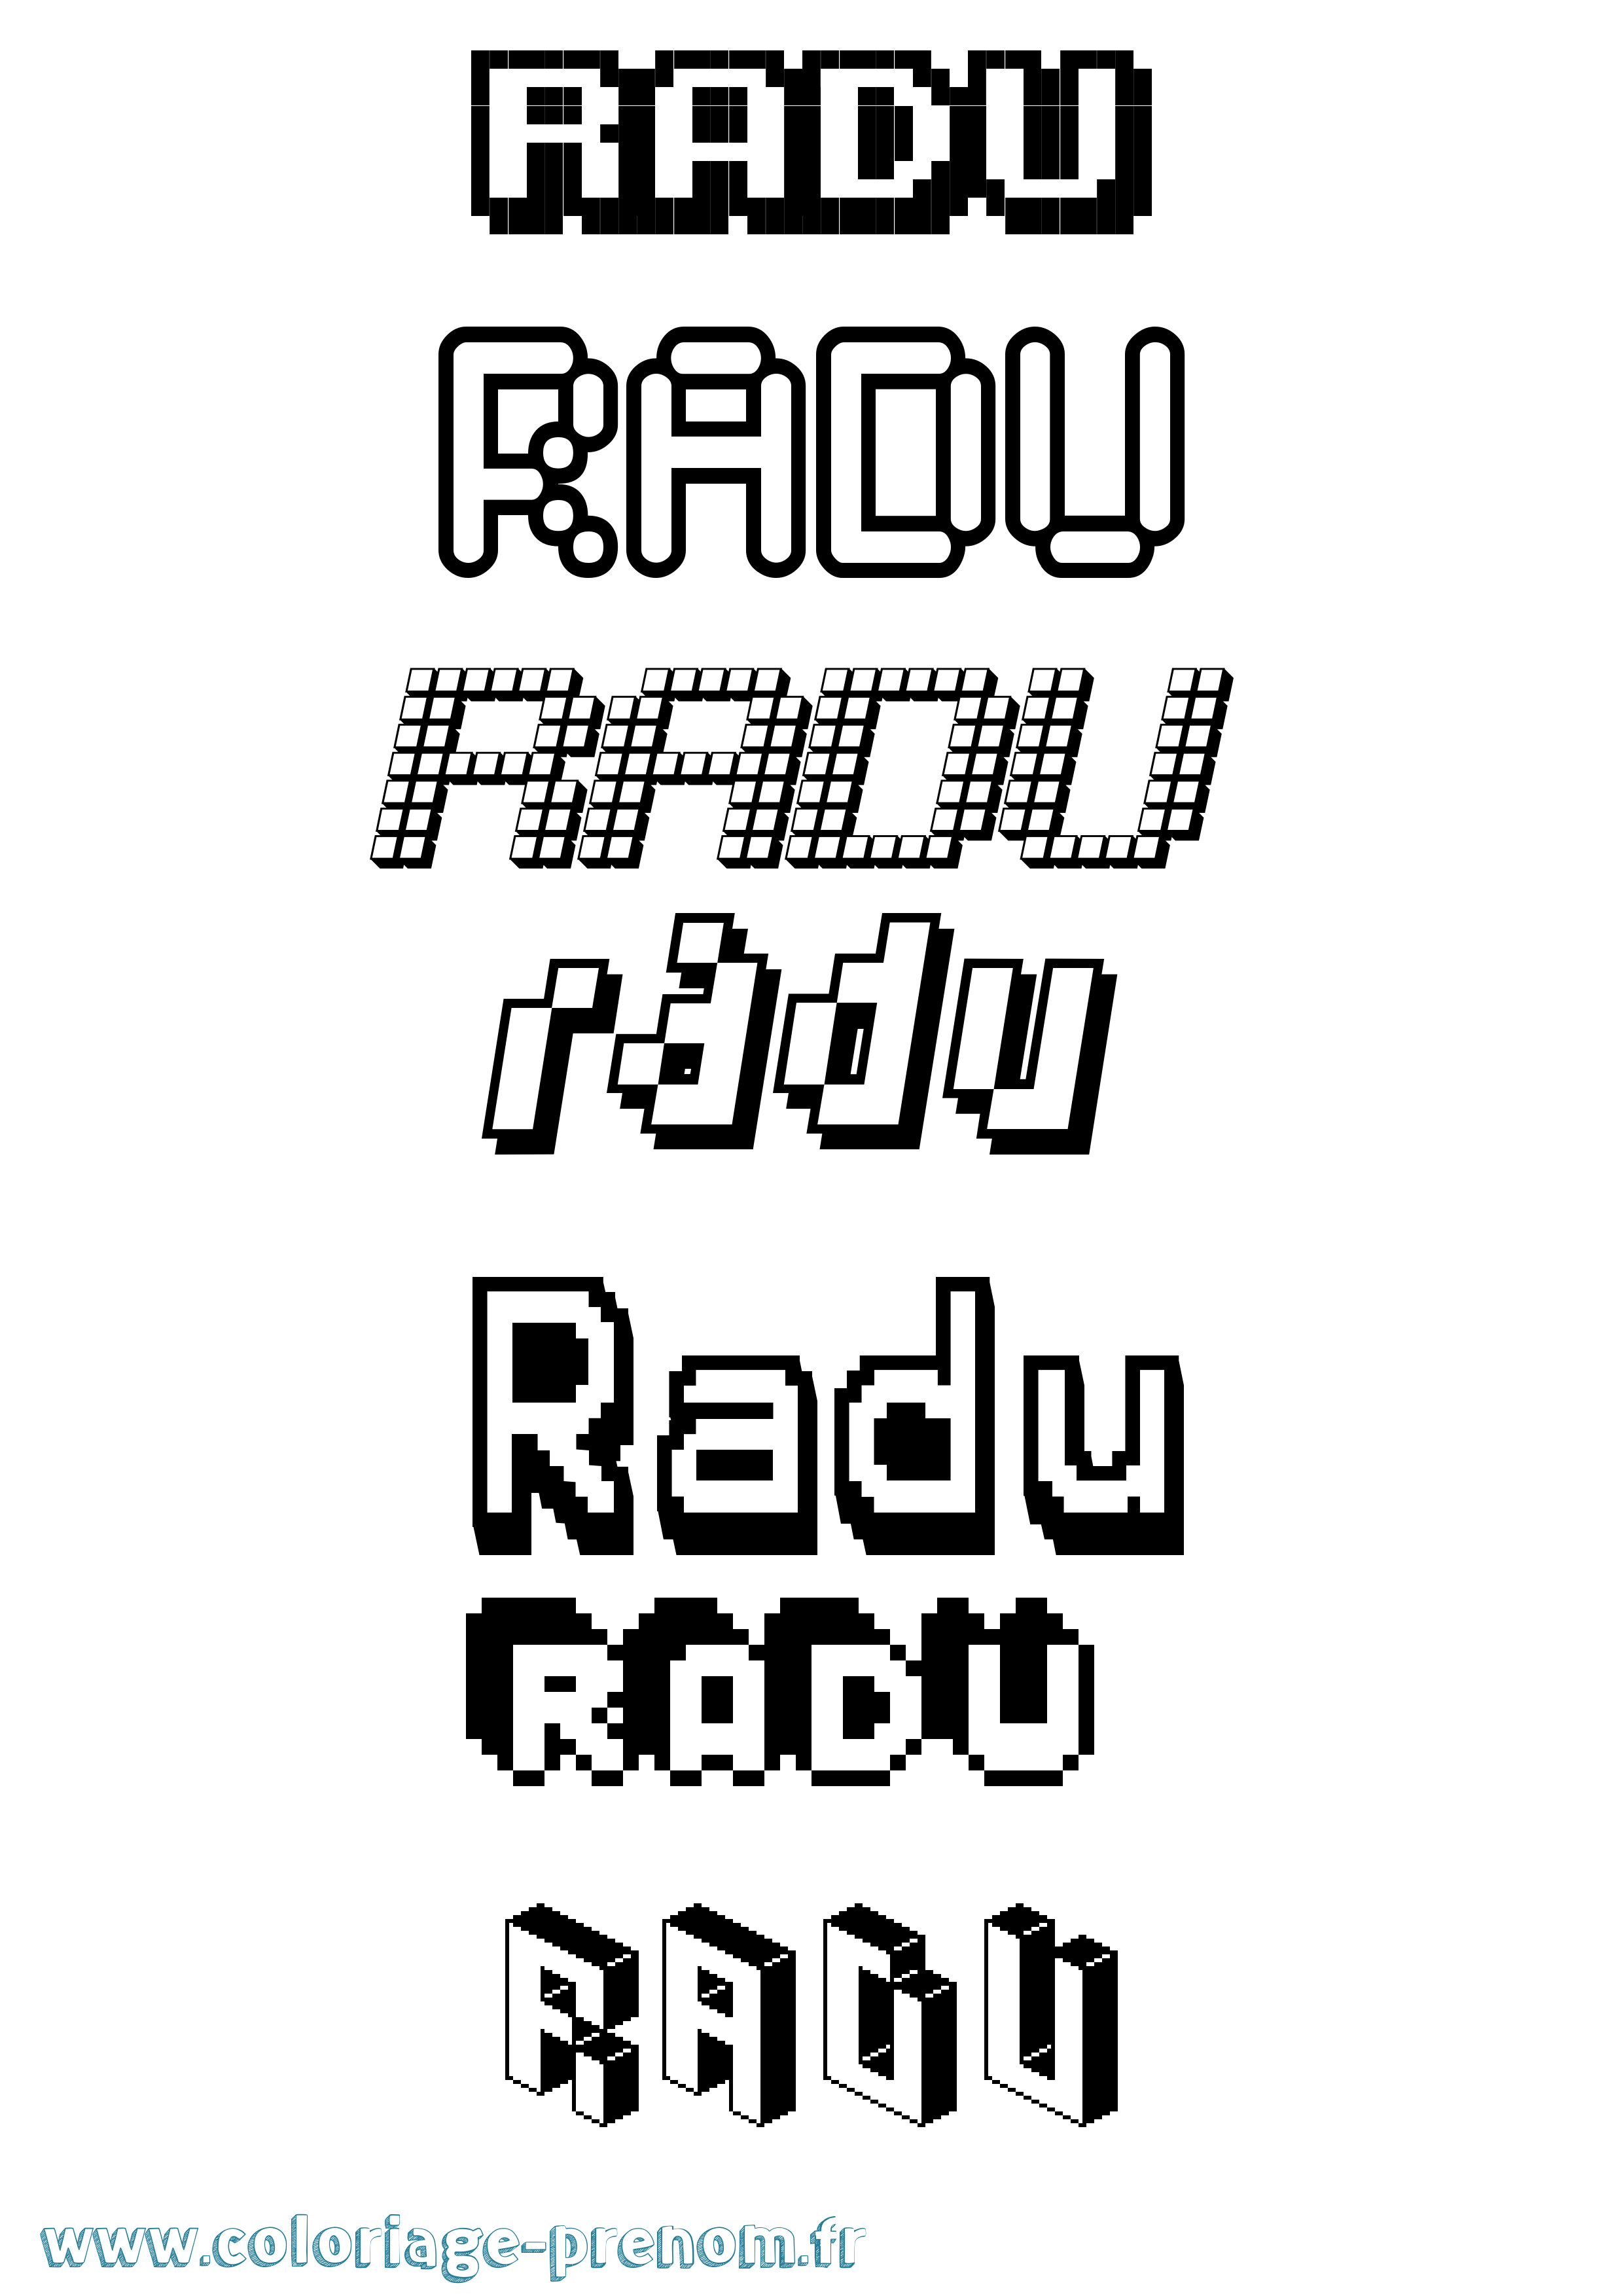 Coloriage prénom Radu Pixel